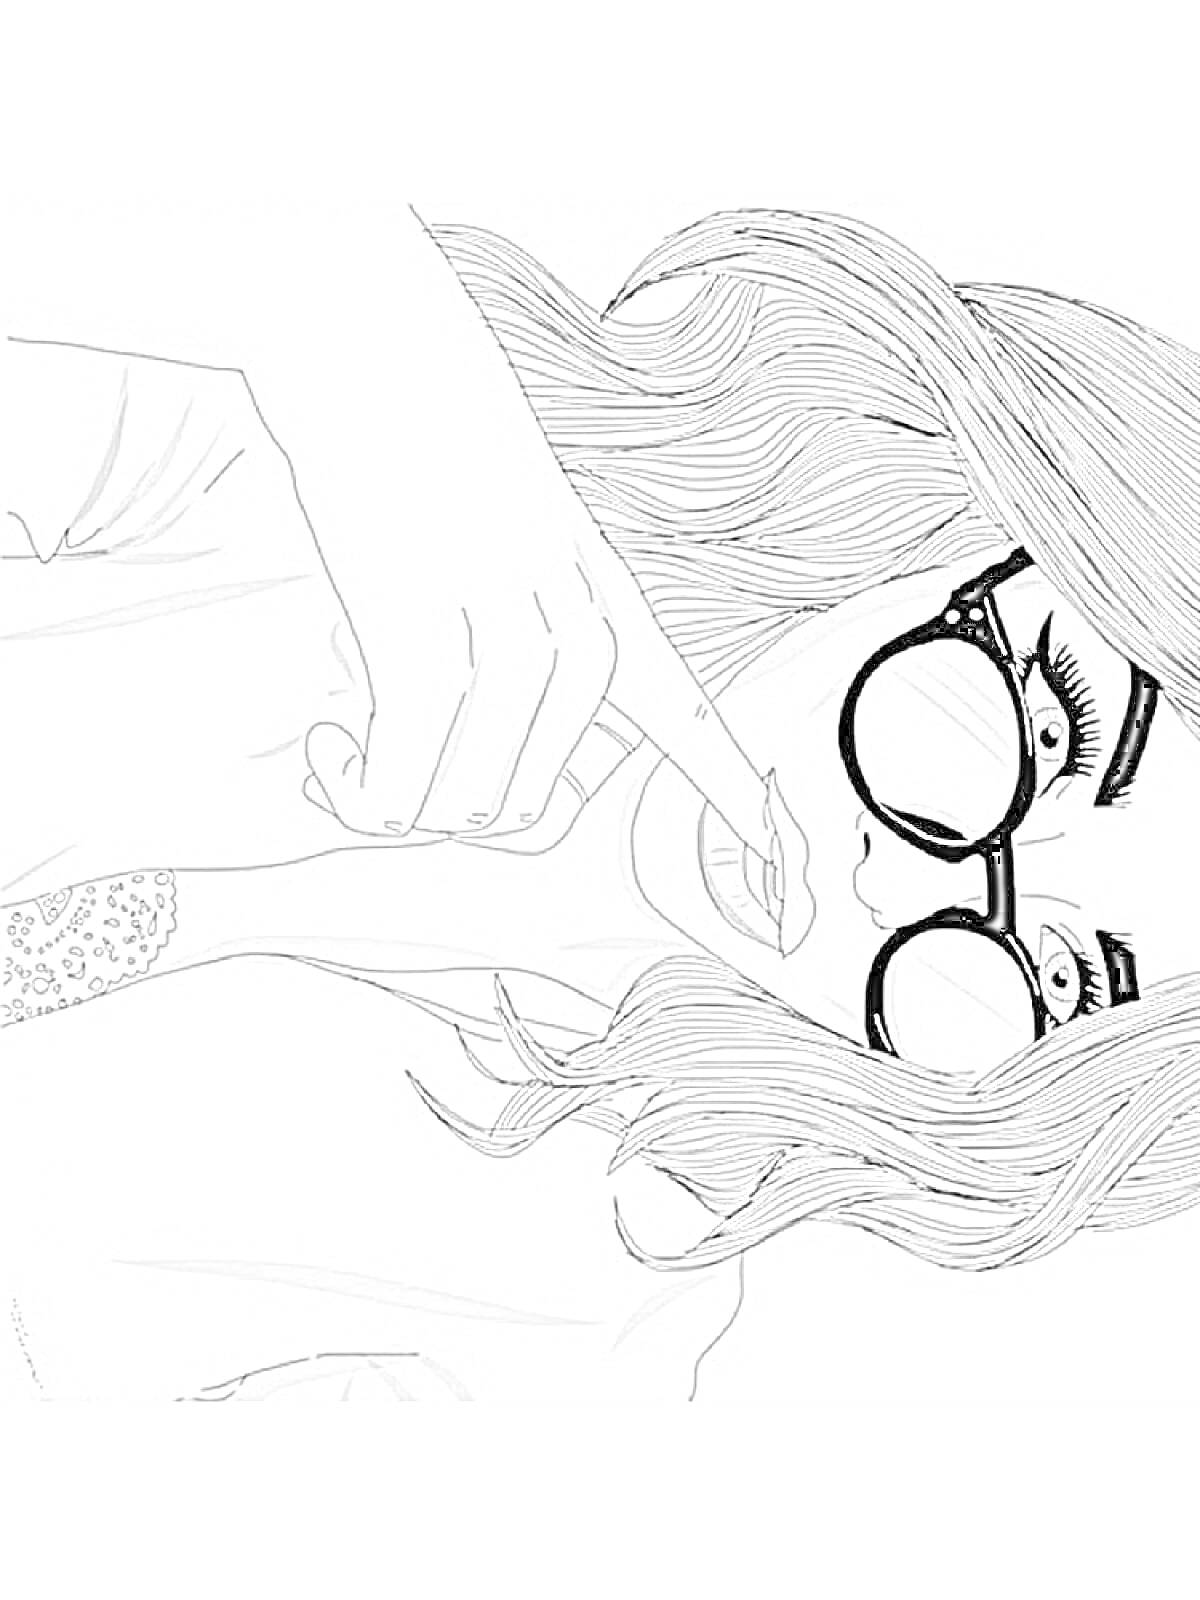 Раскраска Девочка в очках с длинными волосами и модной прической, указывающая на губы пальцем